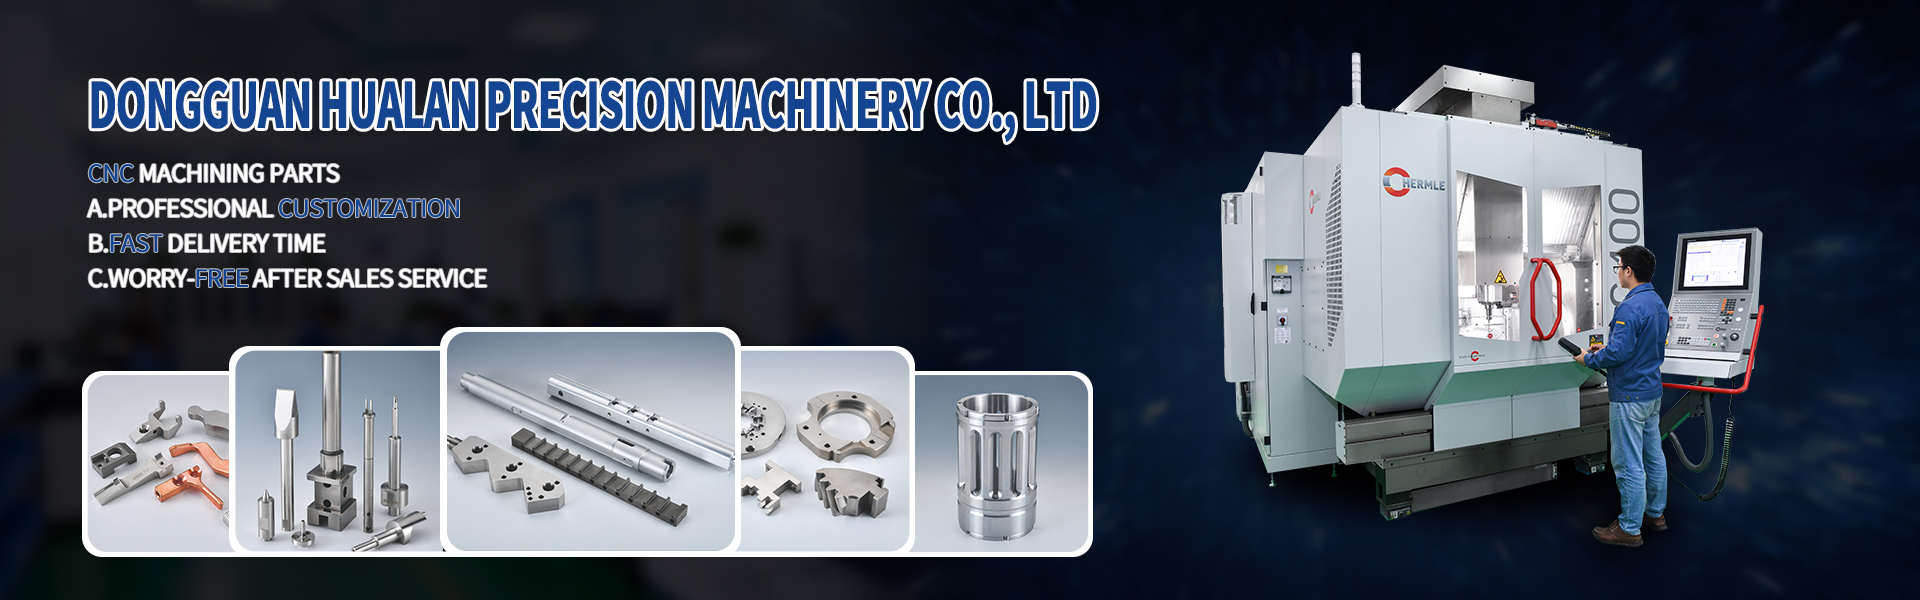 Parti di lavorazione CNC, Turing e fresatura, taglio della linea,Dongguan Hualan Precision Machinery Co., LTD